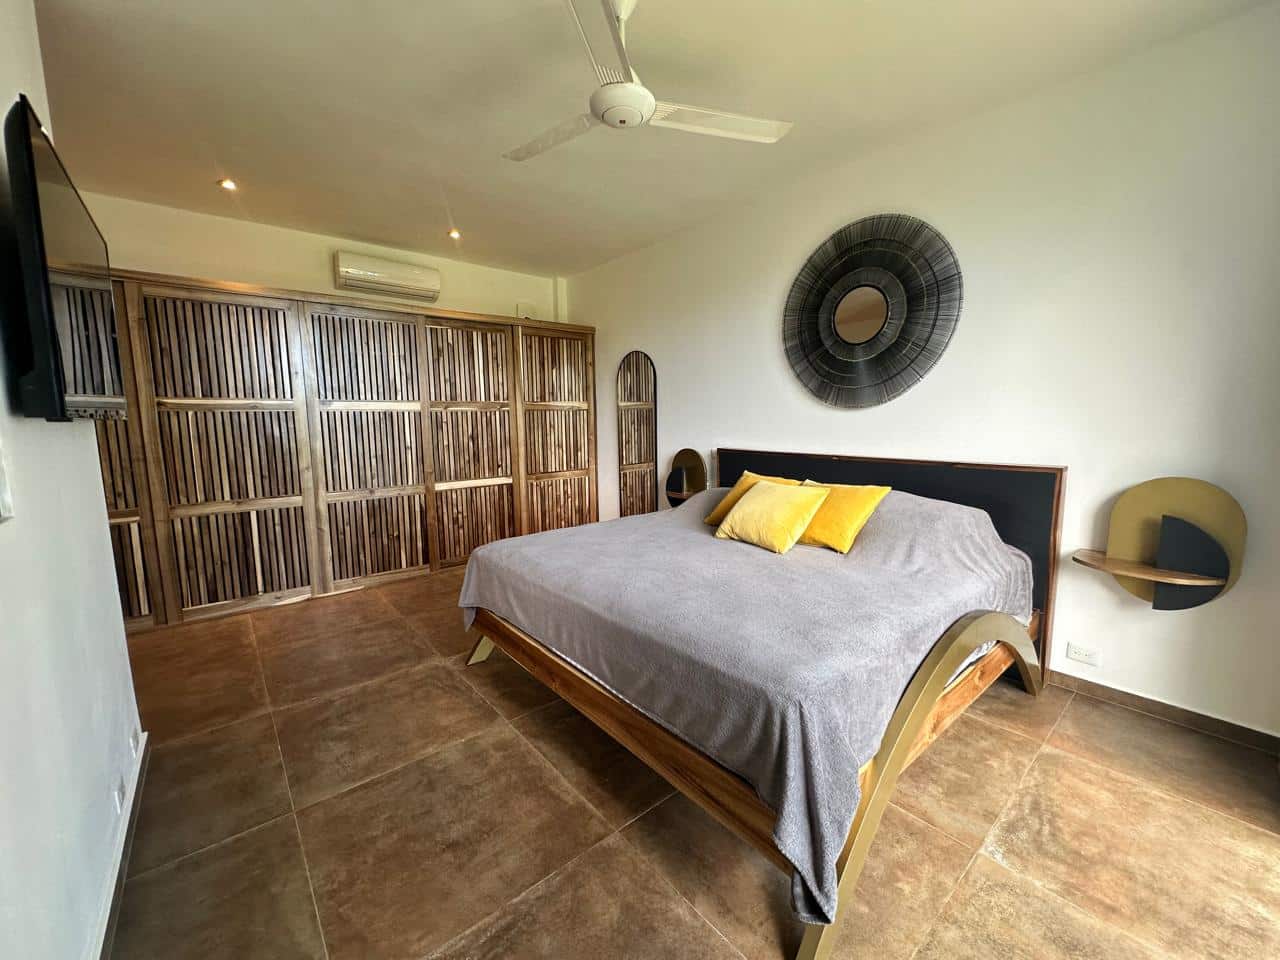 Splendid 4-bedroom villa with ocean vista - Las Terrenas Real Estate - Ocean Edge Dominican Republic (30)